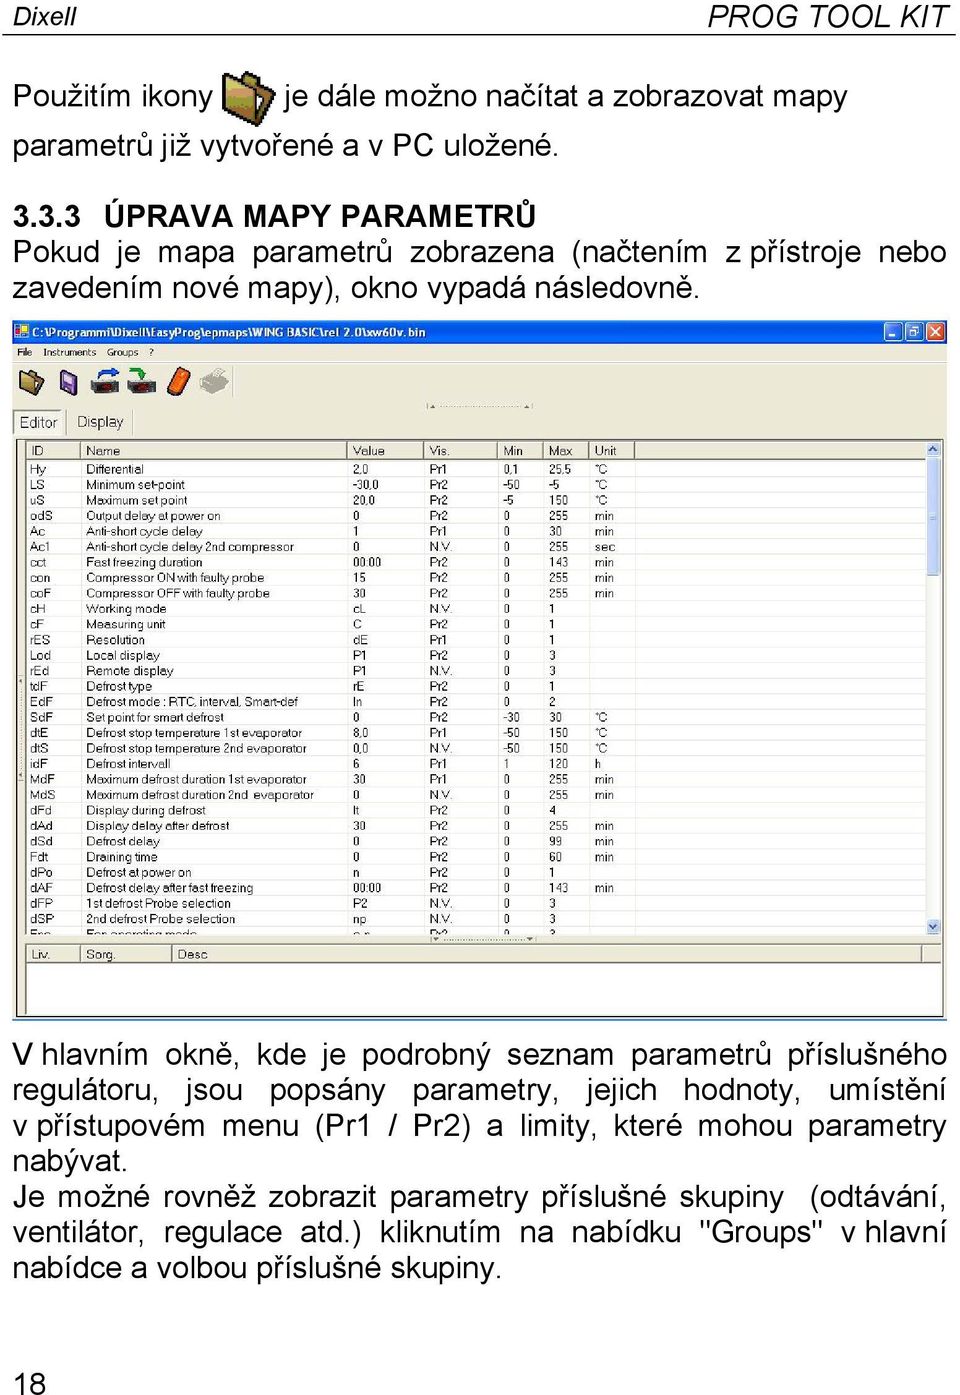 V hlavním okně, kde je podrobný seznam parametrů příslušného regulátoru, jsou popsány parametry, jejich hodnoty, umístění v přístupovém menu (Pr1 / Pr2)